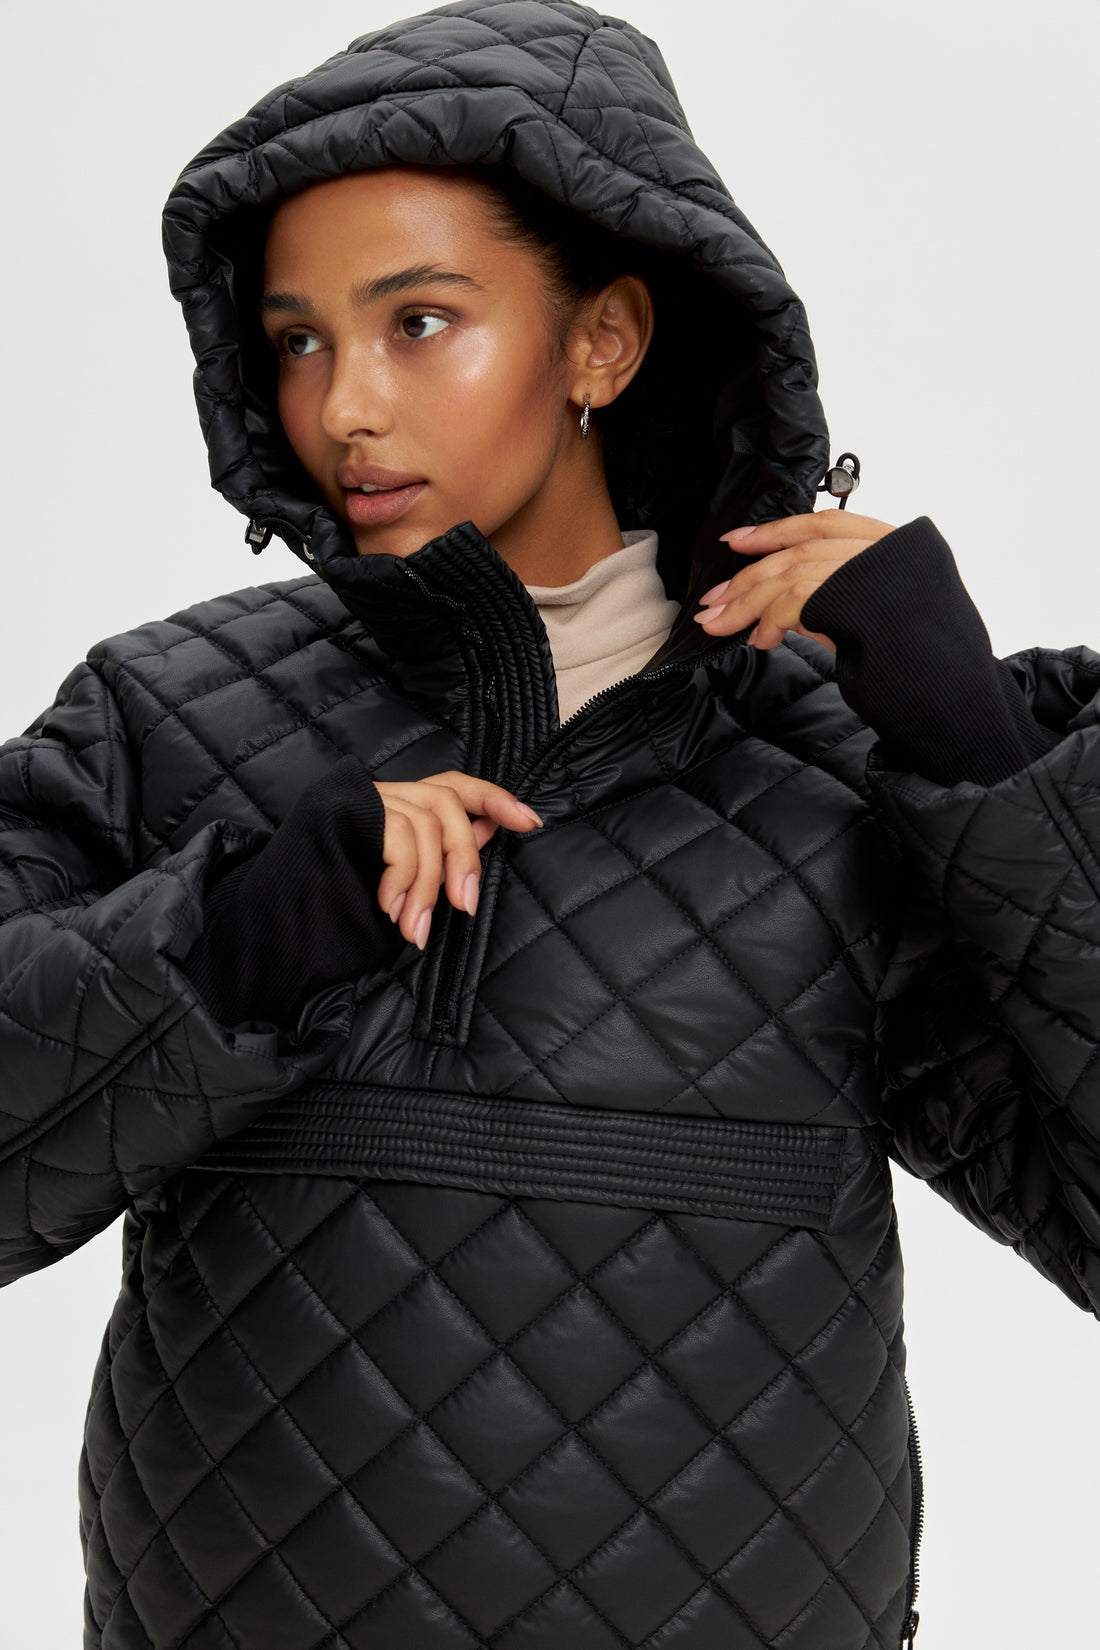 Black two piece snowsuit - ATLAS - Black ski suit - Women winter outwear